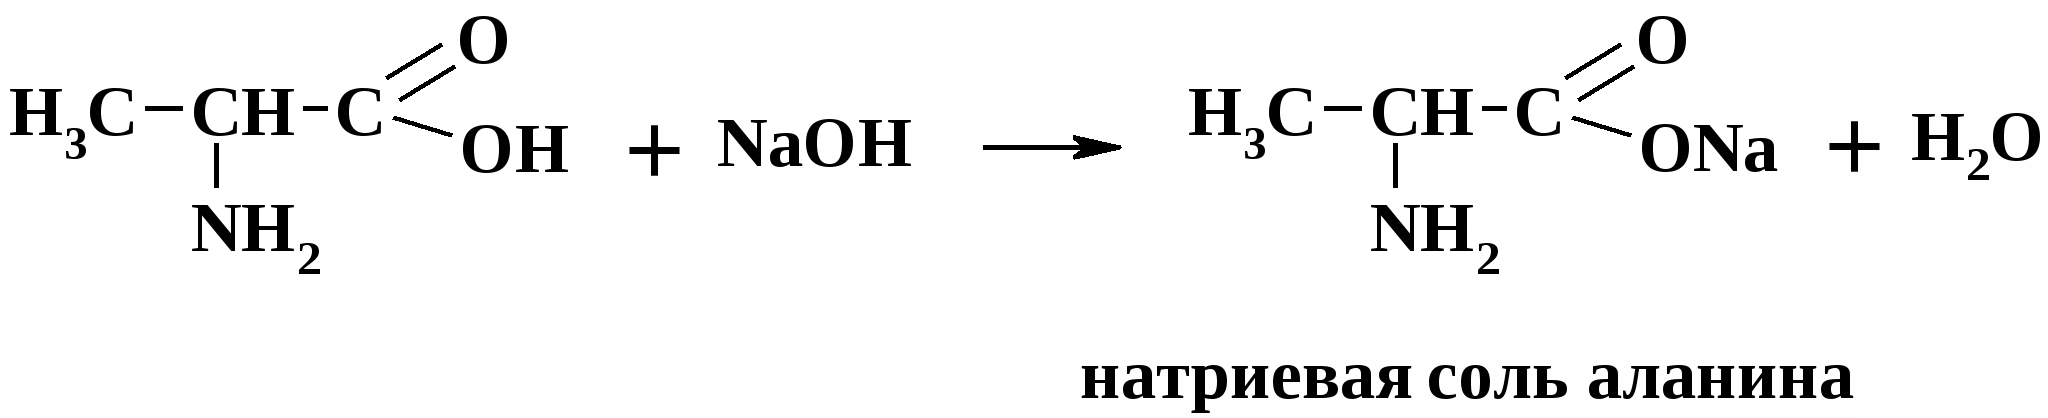 Взаимодействие аминокислот с соляной кислотой. Аминокислота и соляная кислота. Реакция взаимодействия аминокислот. Реакция аминокислоты с соляной кислотой.